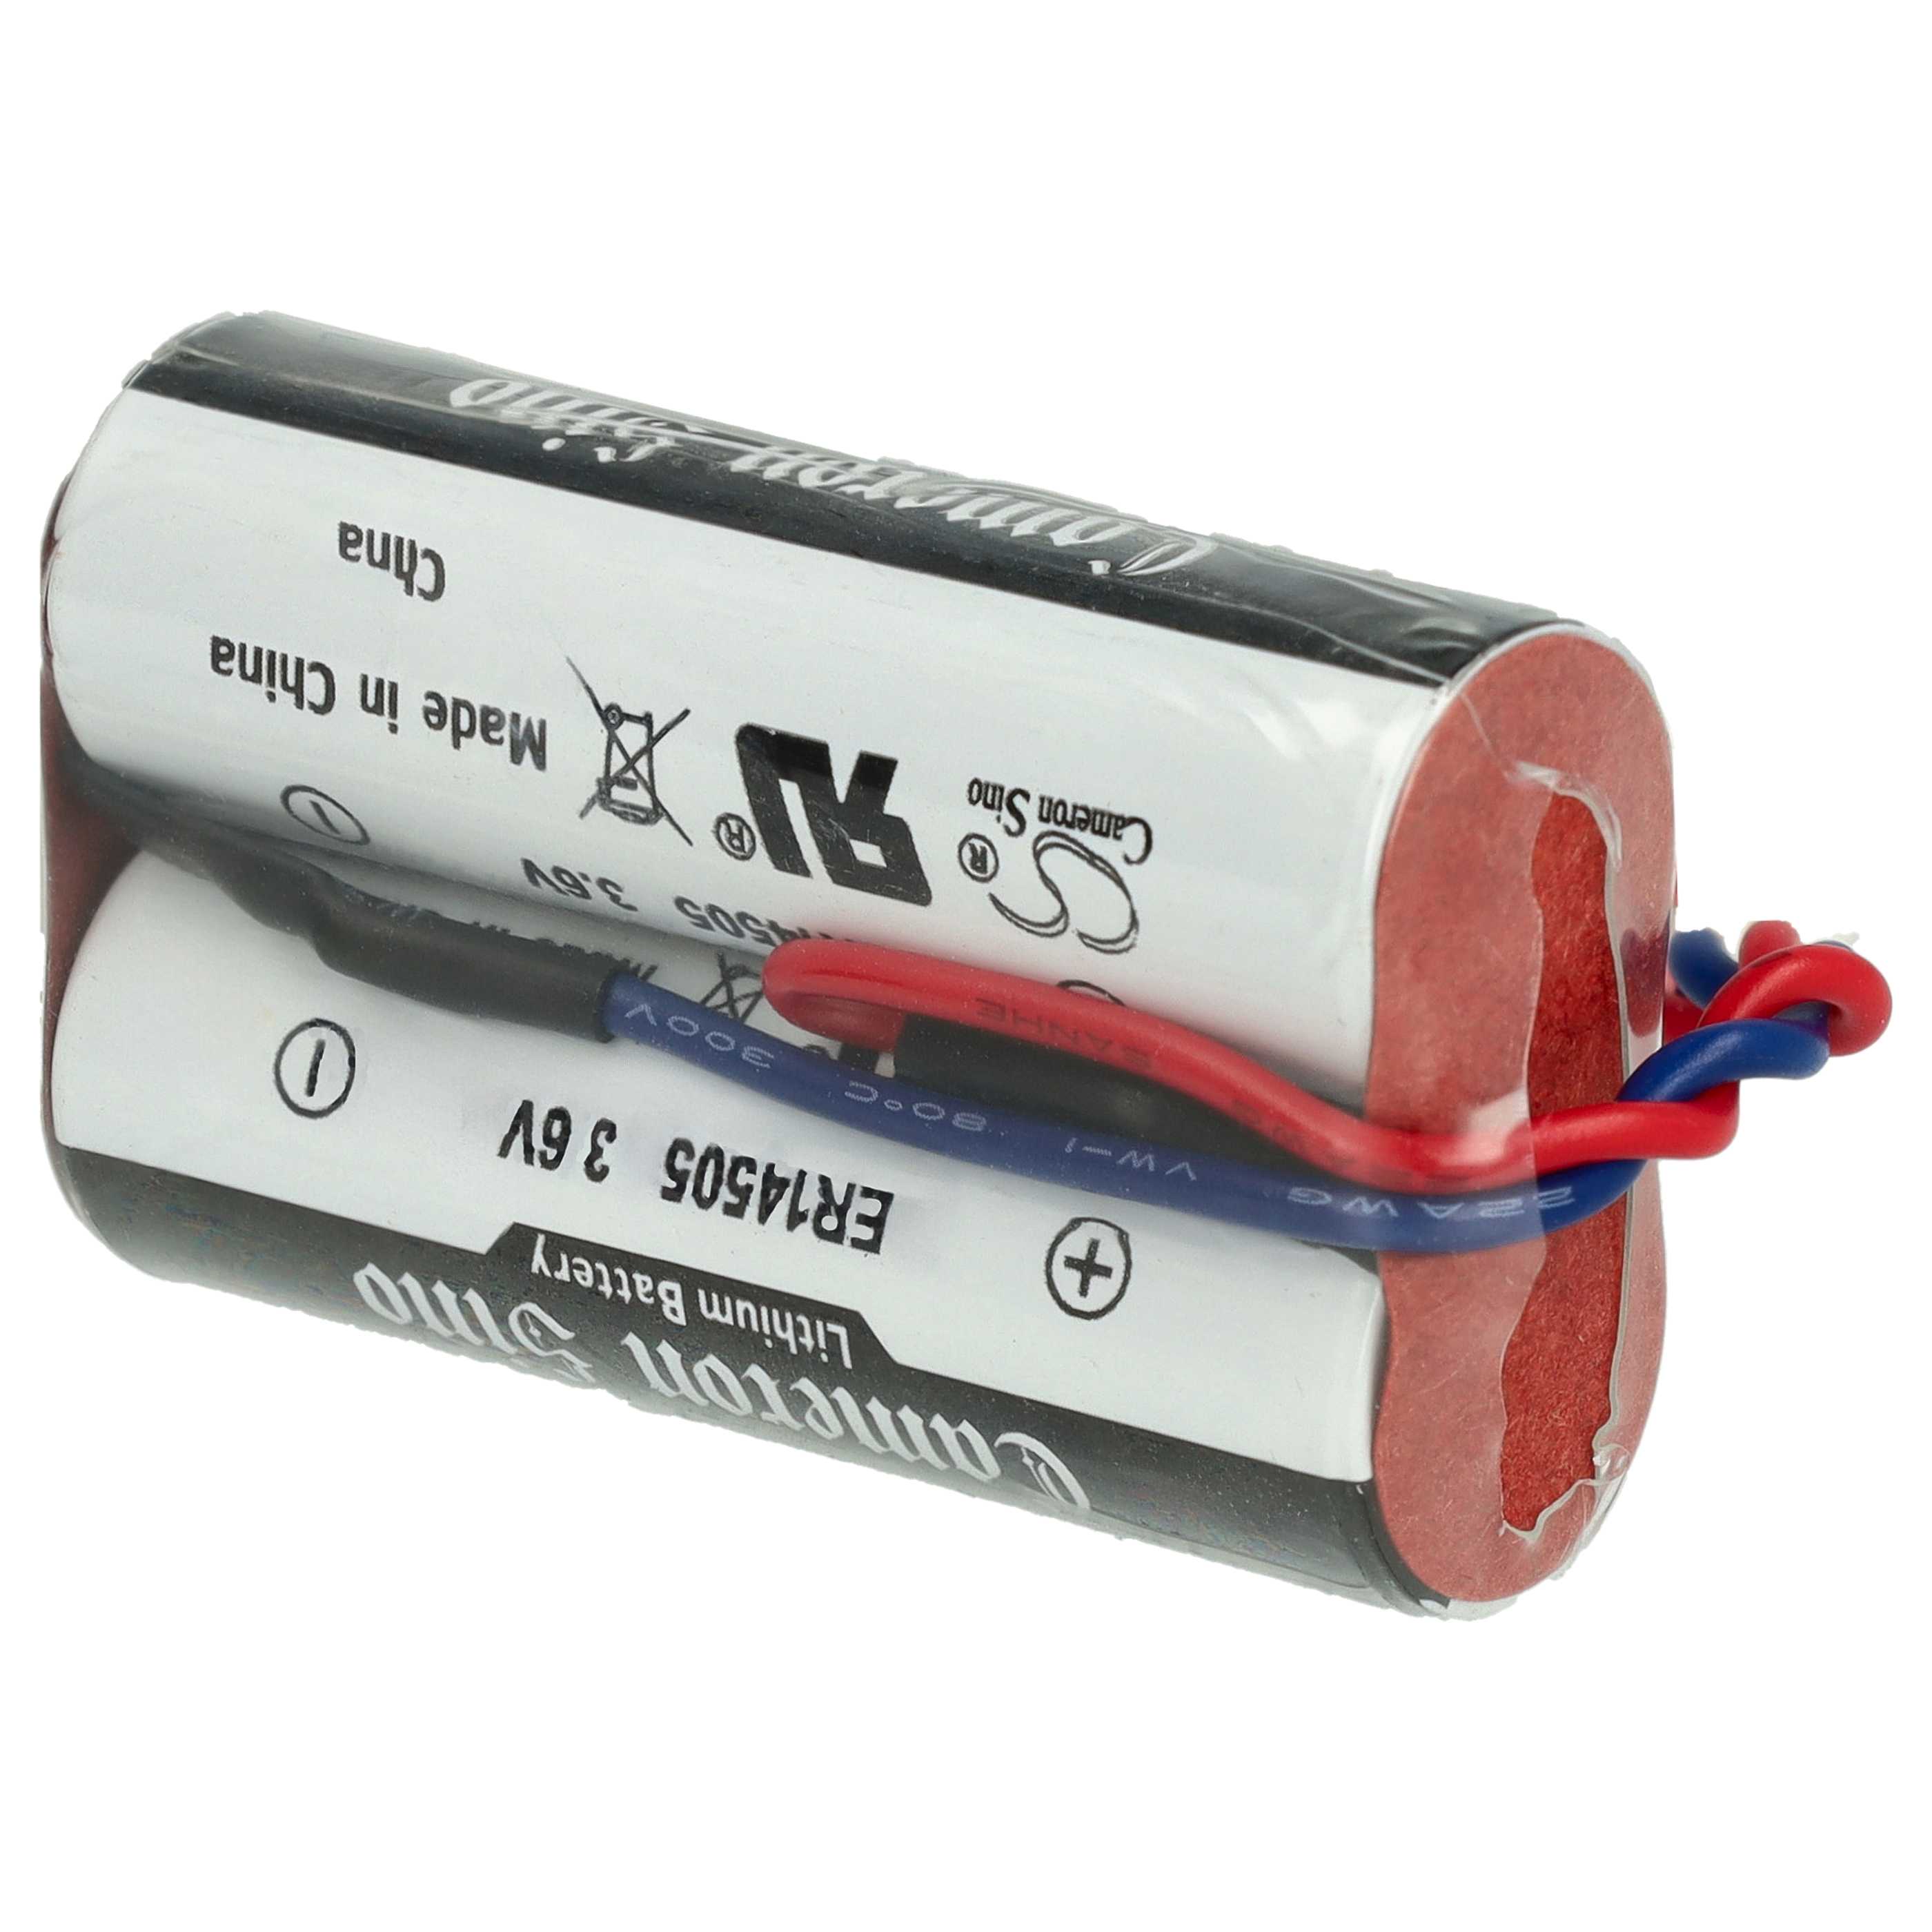 Bewegungsmelder-Batterie als Ersatz für ABB D8904, FAS8904, 4016779392402 - 5400mAh 3,6V Li-SOCl2